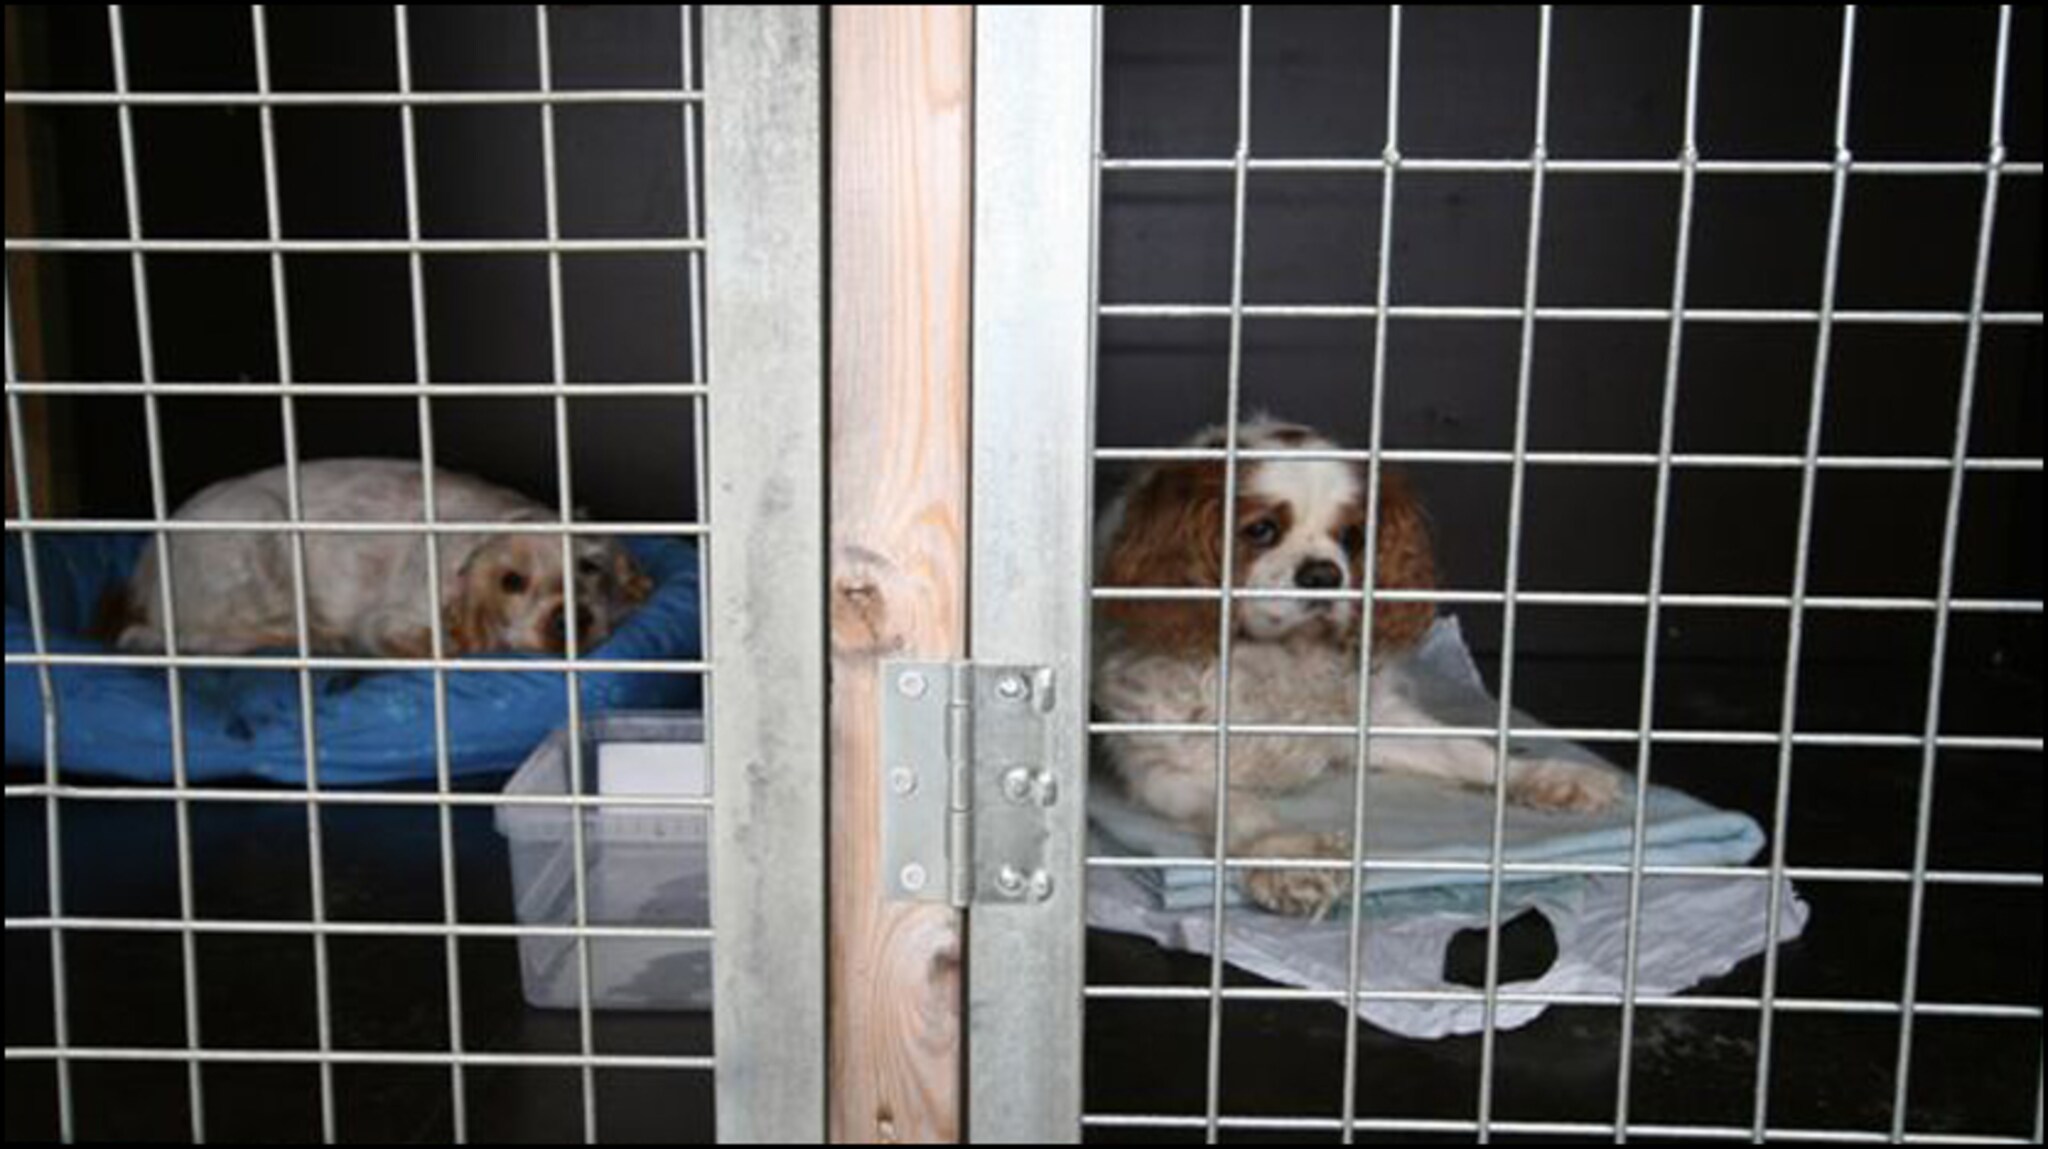 Kjæledyr inne bak lås og slå: - Dette et fengsel for hunder - VG